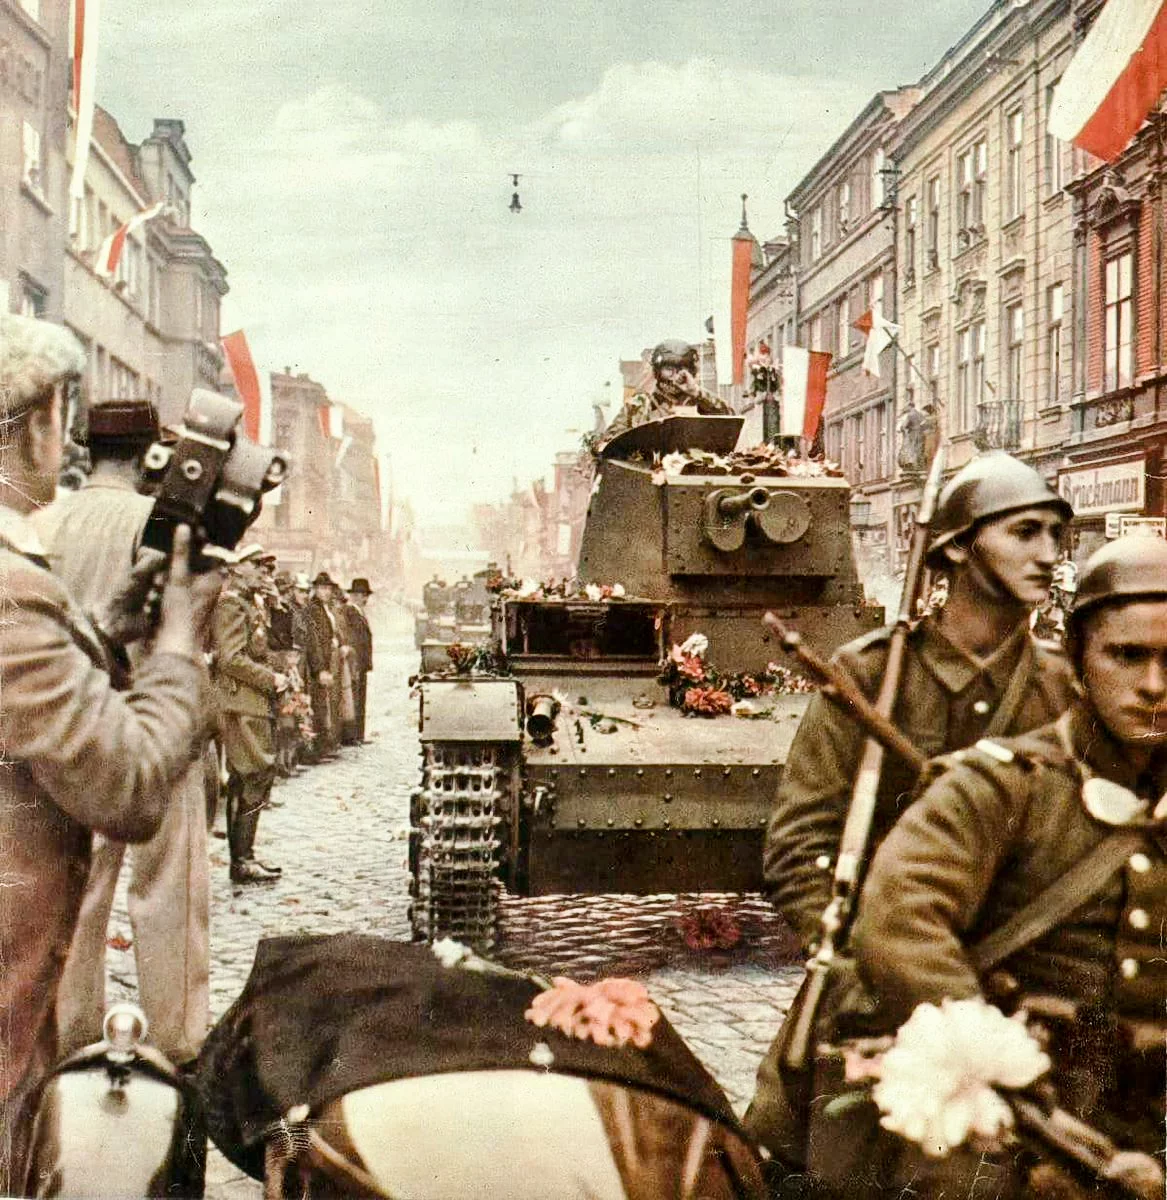 Чехословакия 1938 года